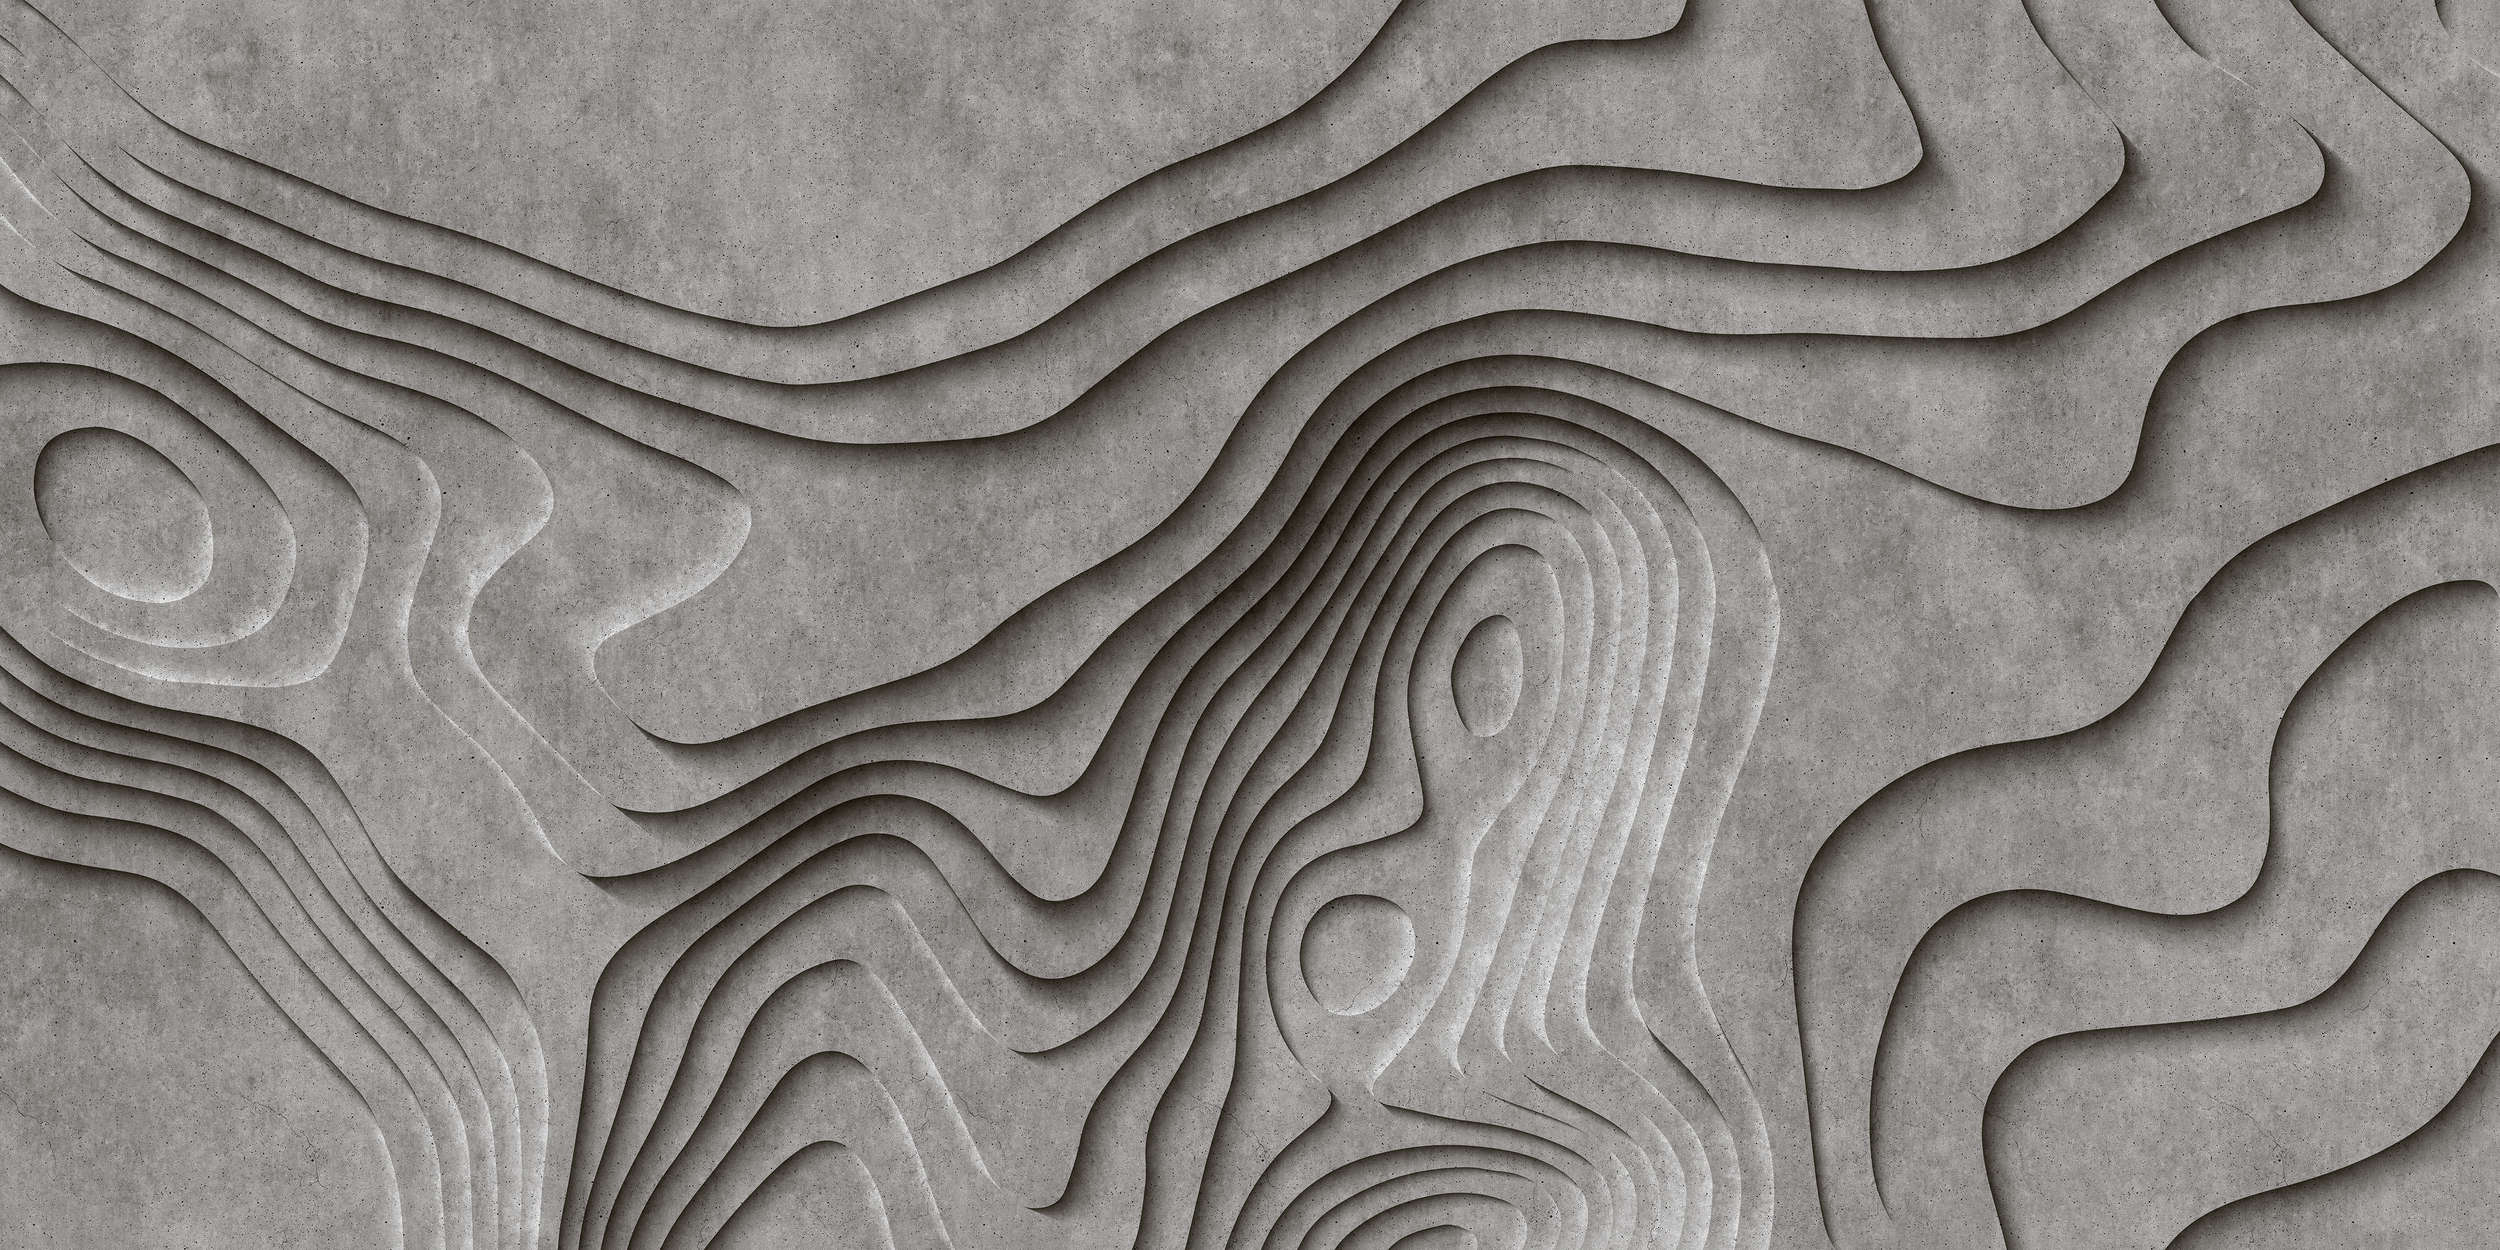             Canyon 1 - Coole 3D Beton-Canyon Fototapete – Grau, Schwarz | Mattes Glattvlies
        